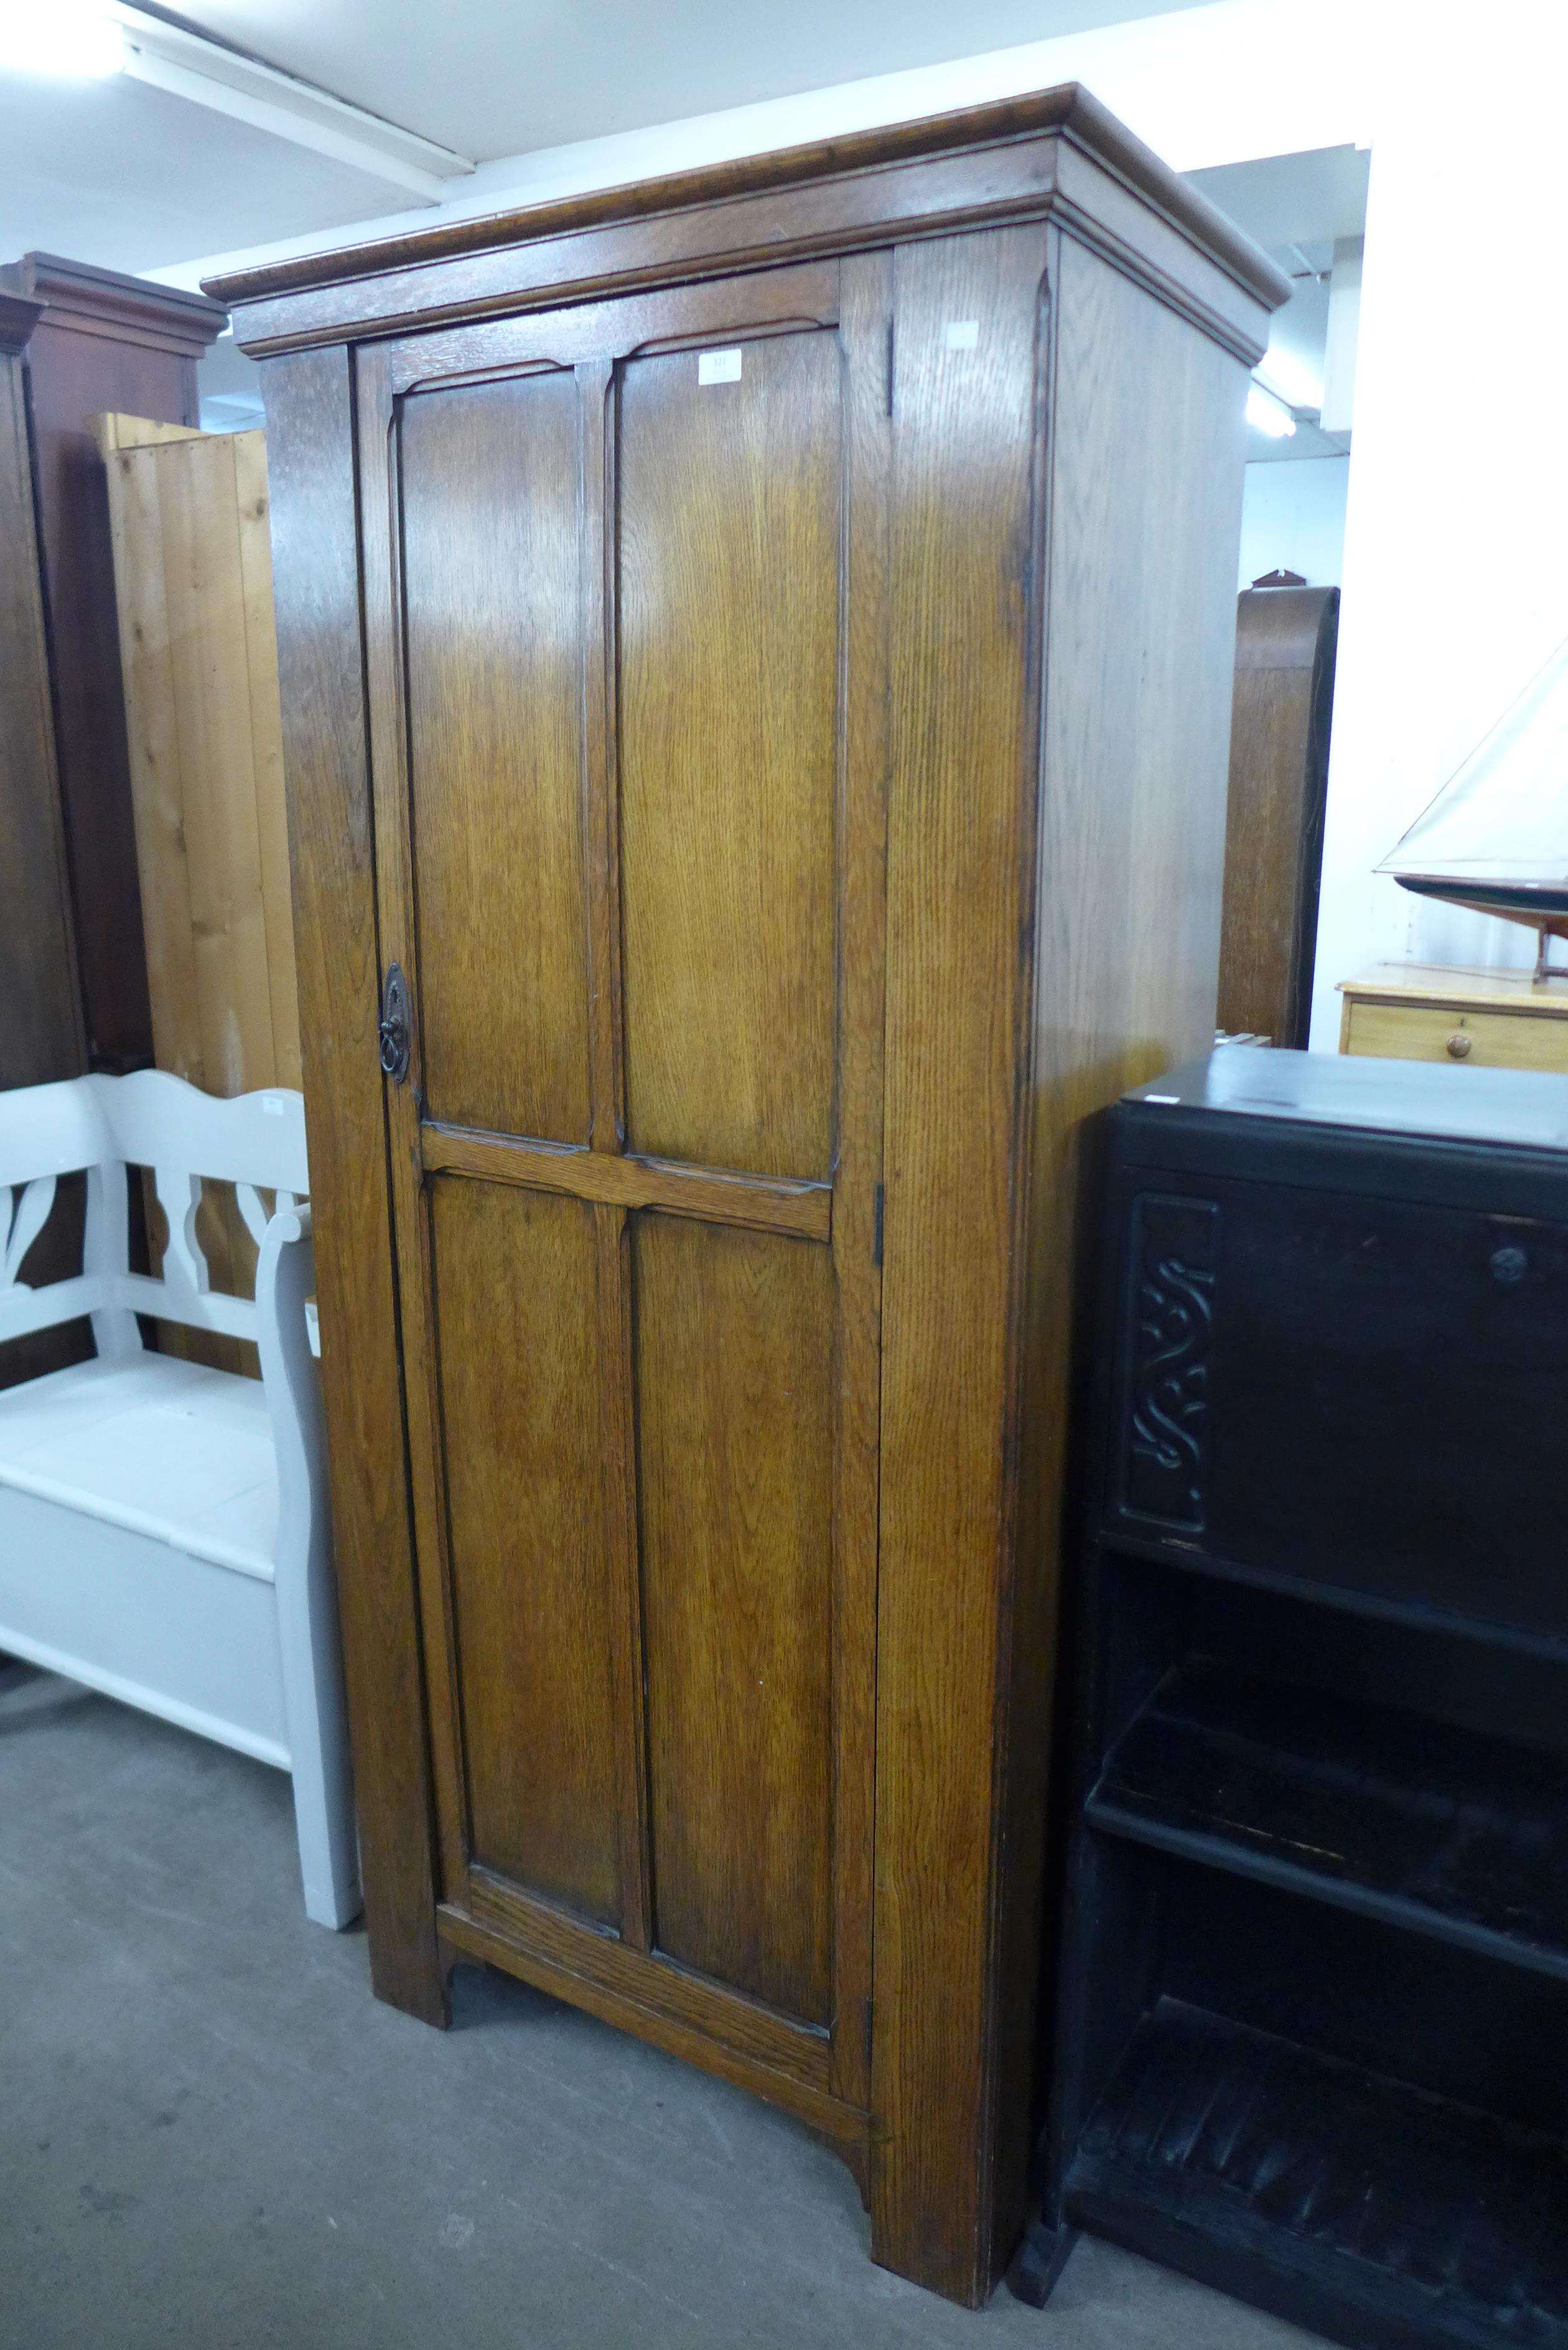 An oak single door wardrobe